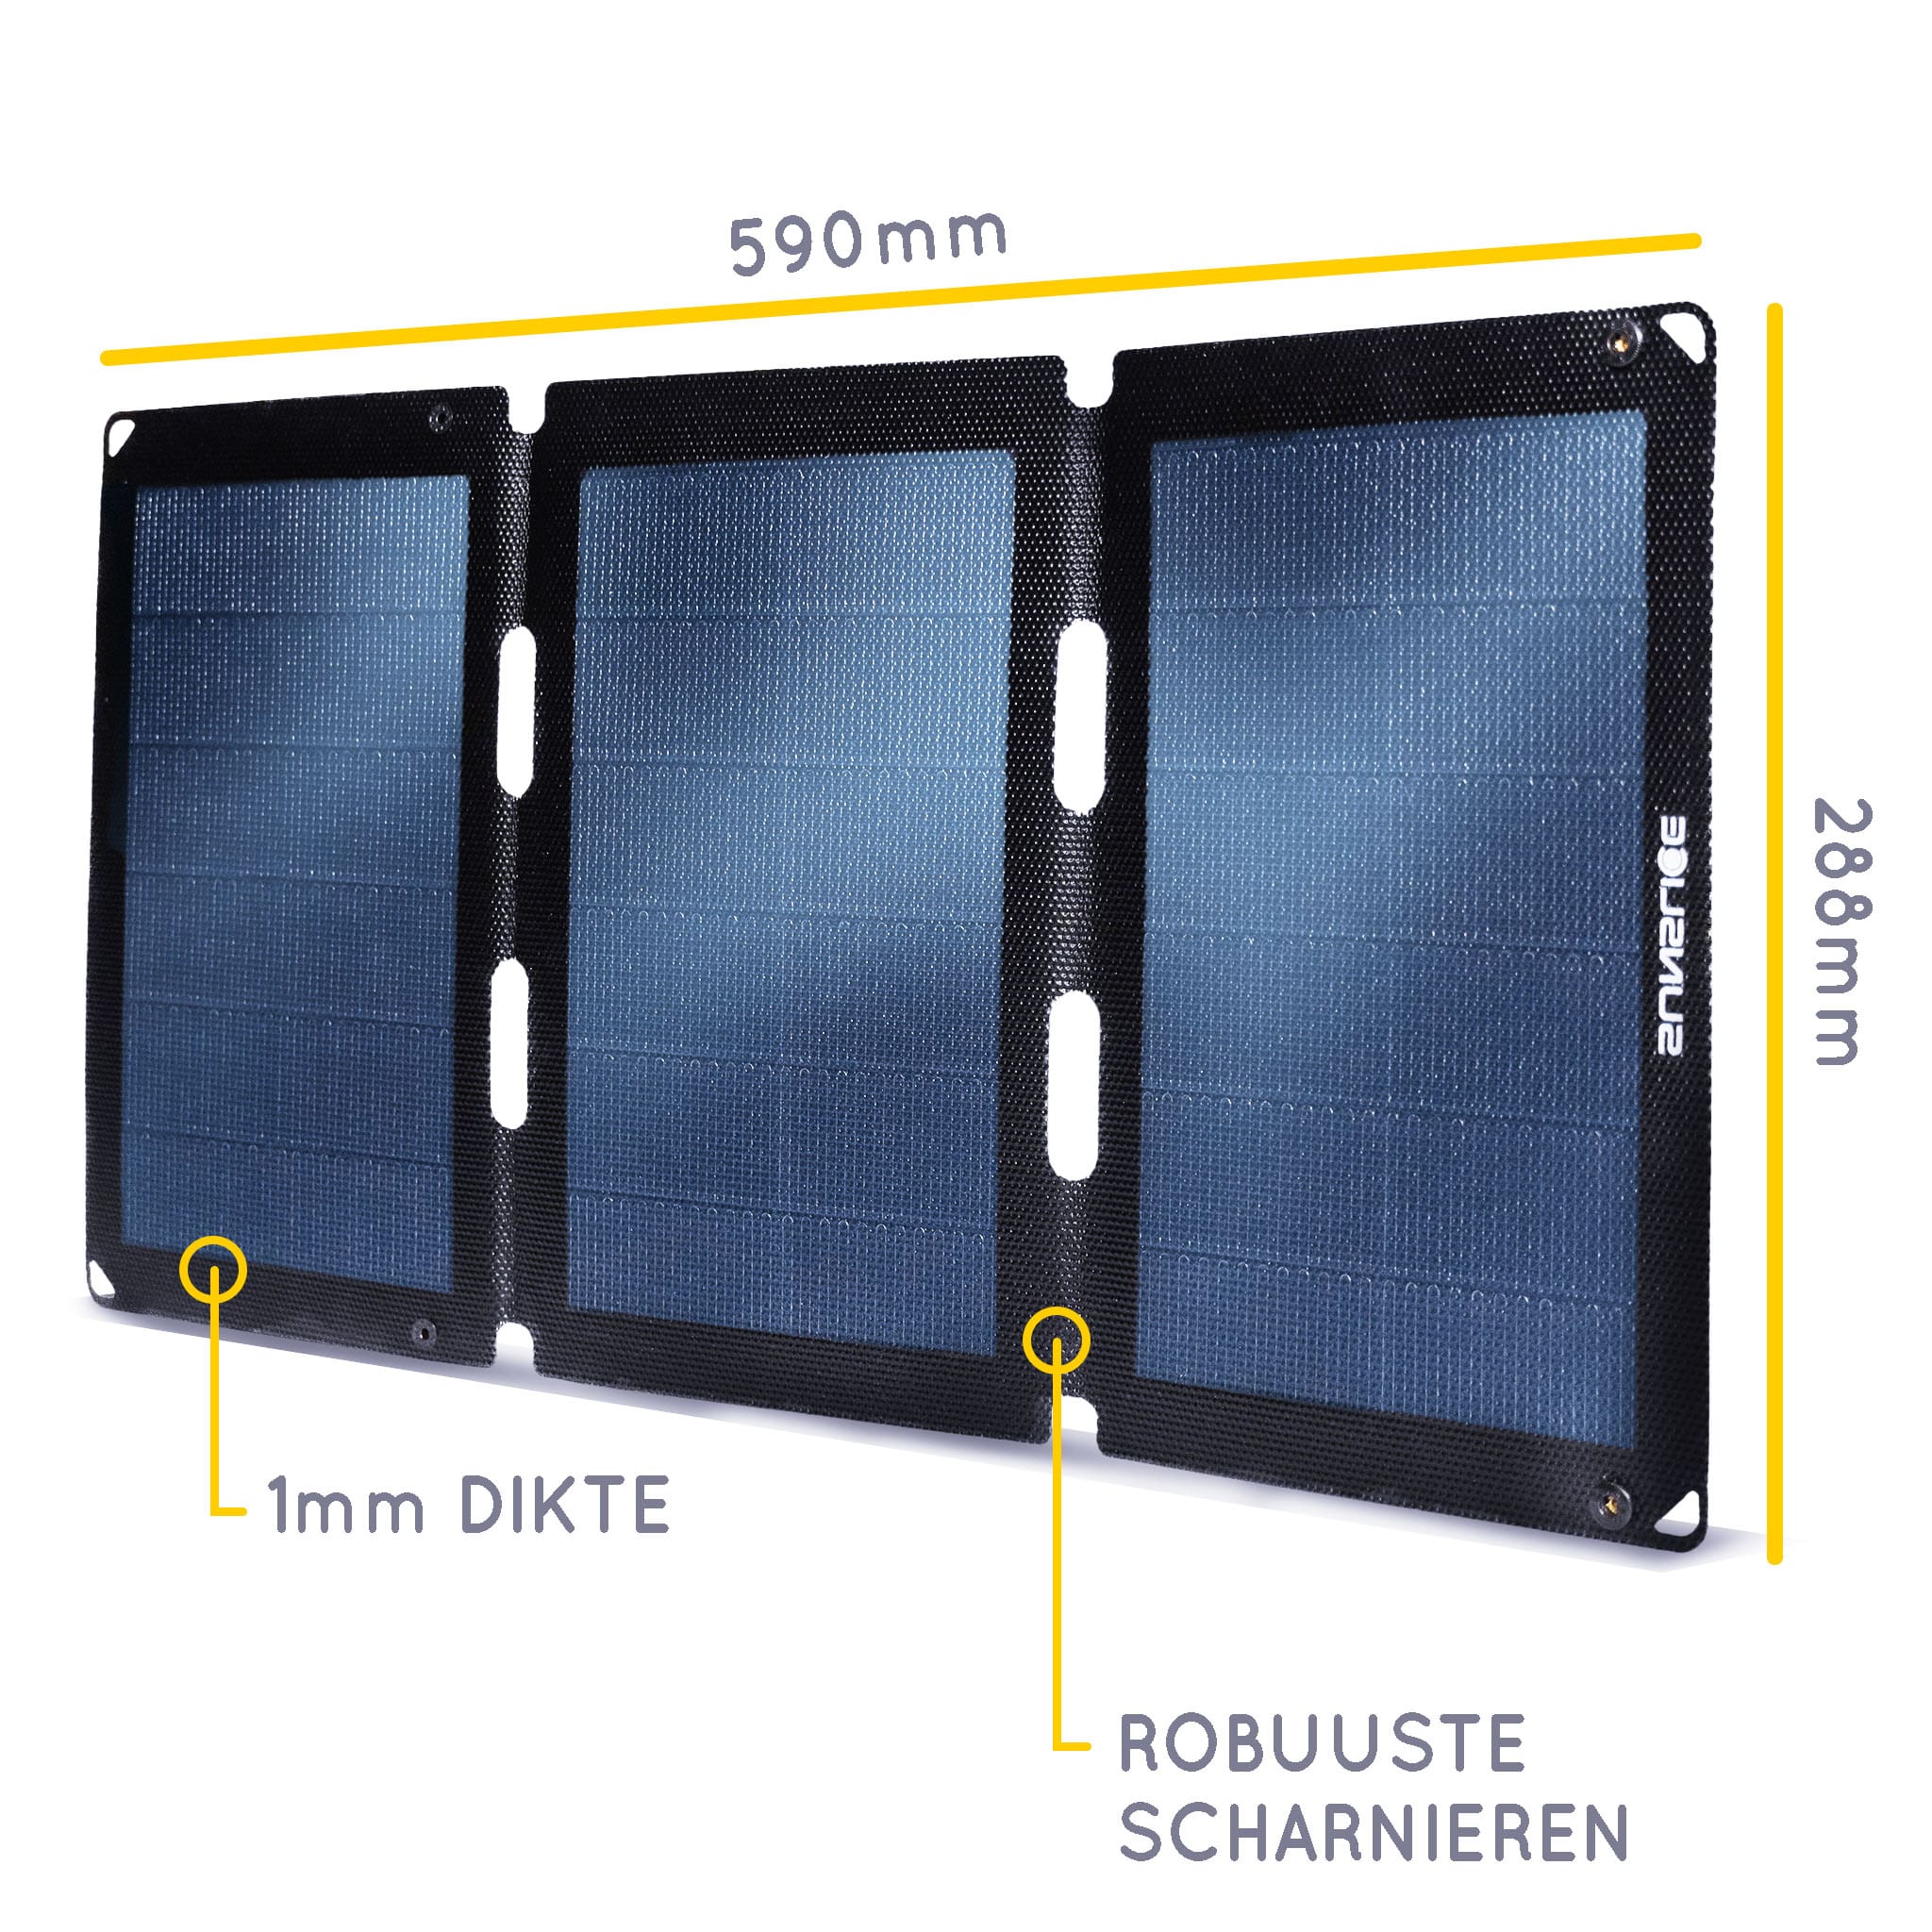 Zonnepaneel (3 panelen) informatie : Afmetingen : 590 mm, 288 mm, dikte 1 mm.